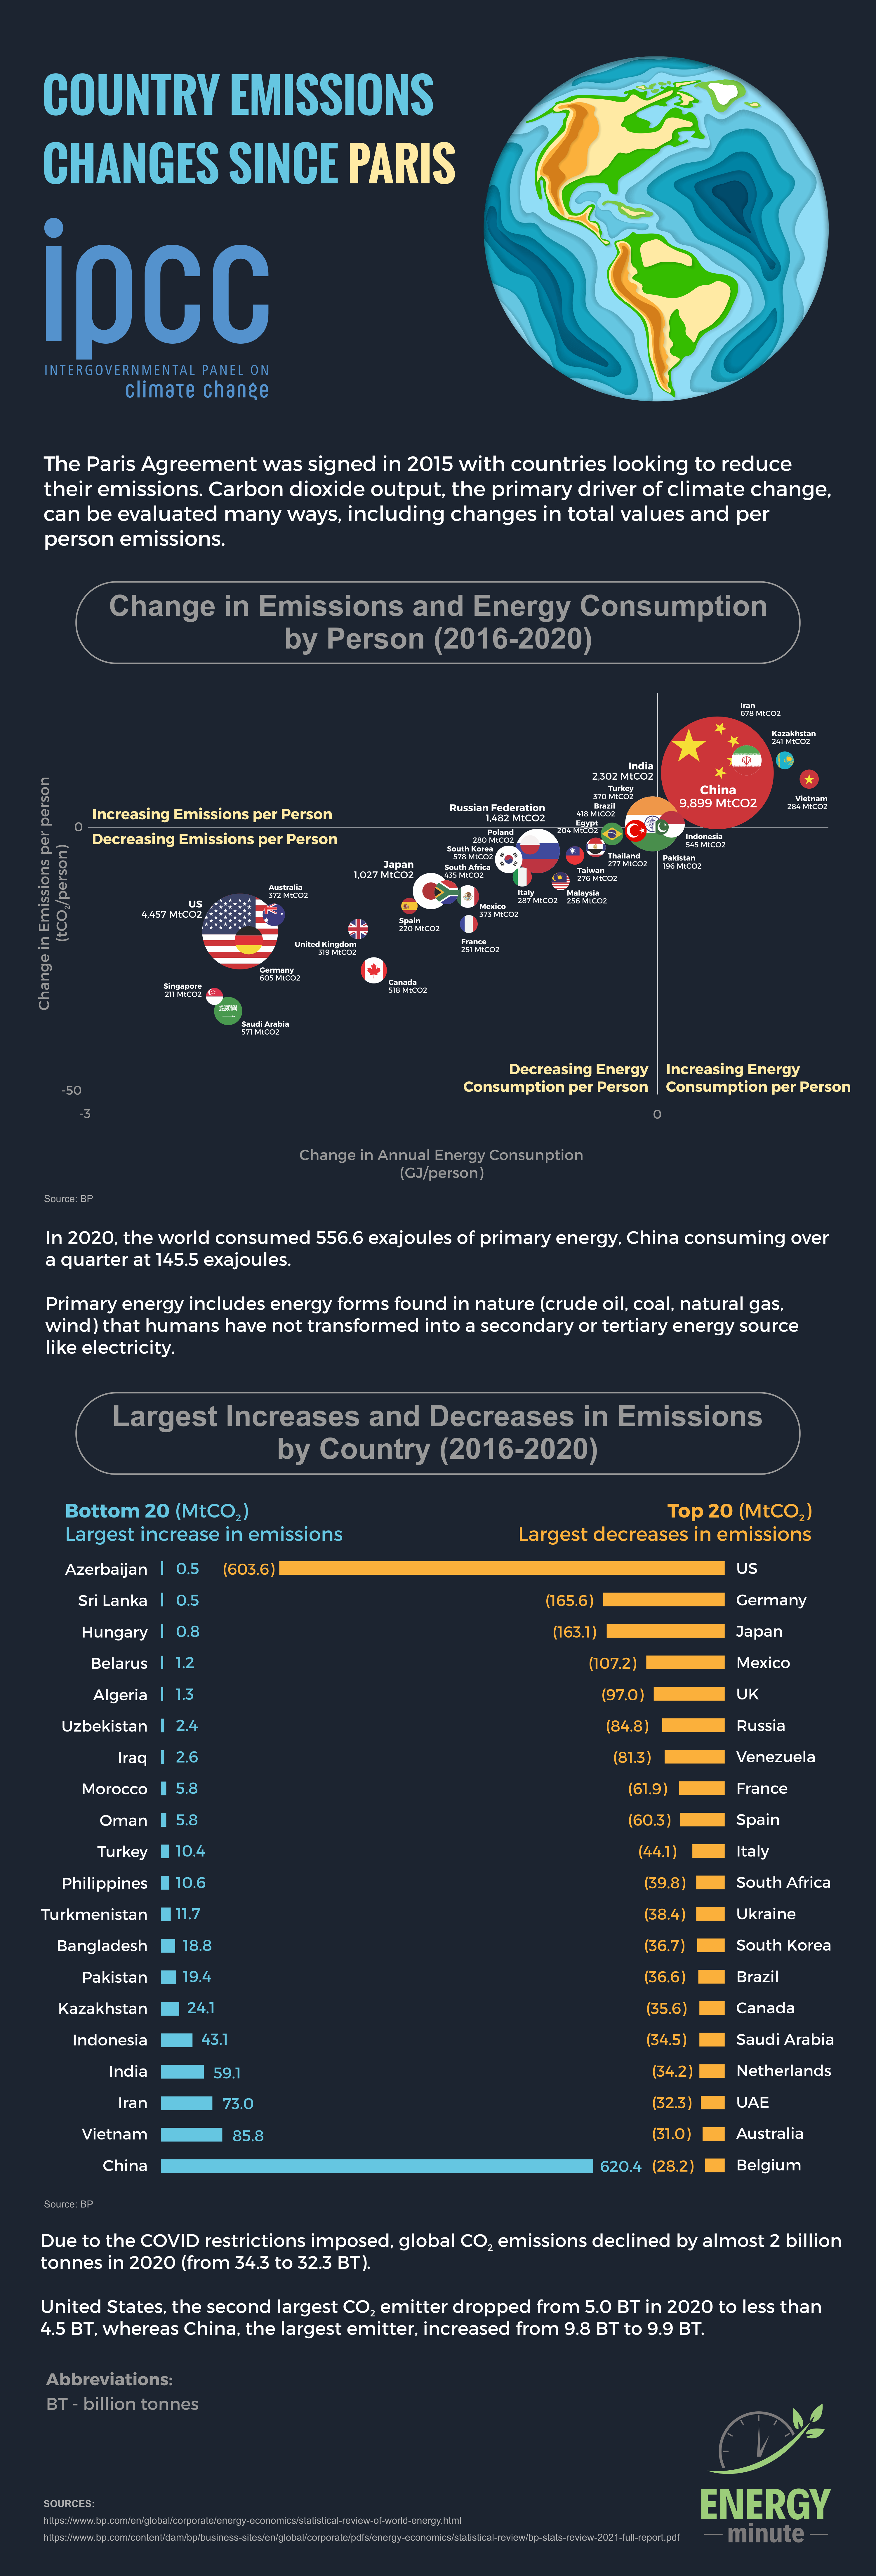 Country Emission Changes Since Paris